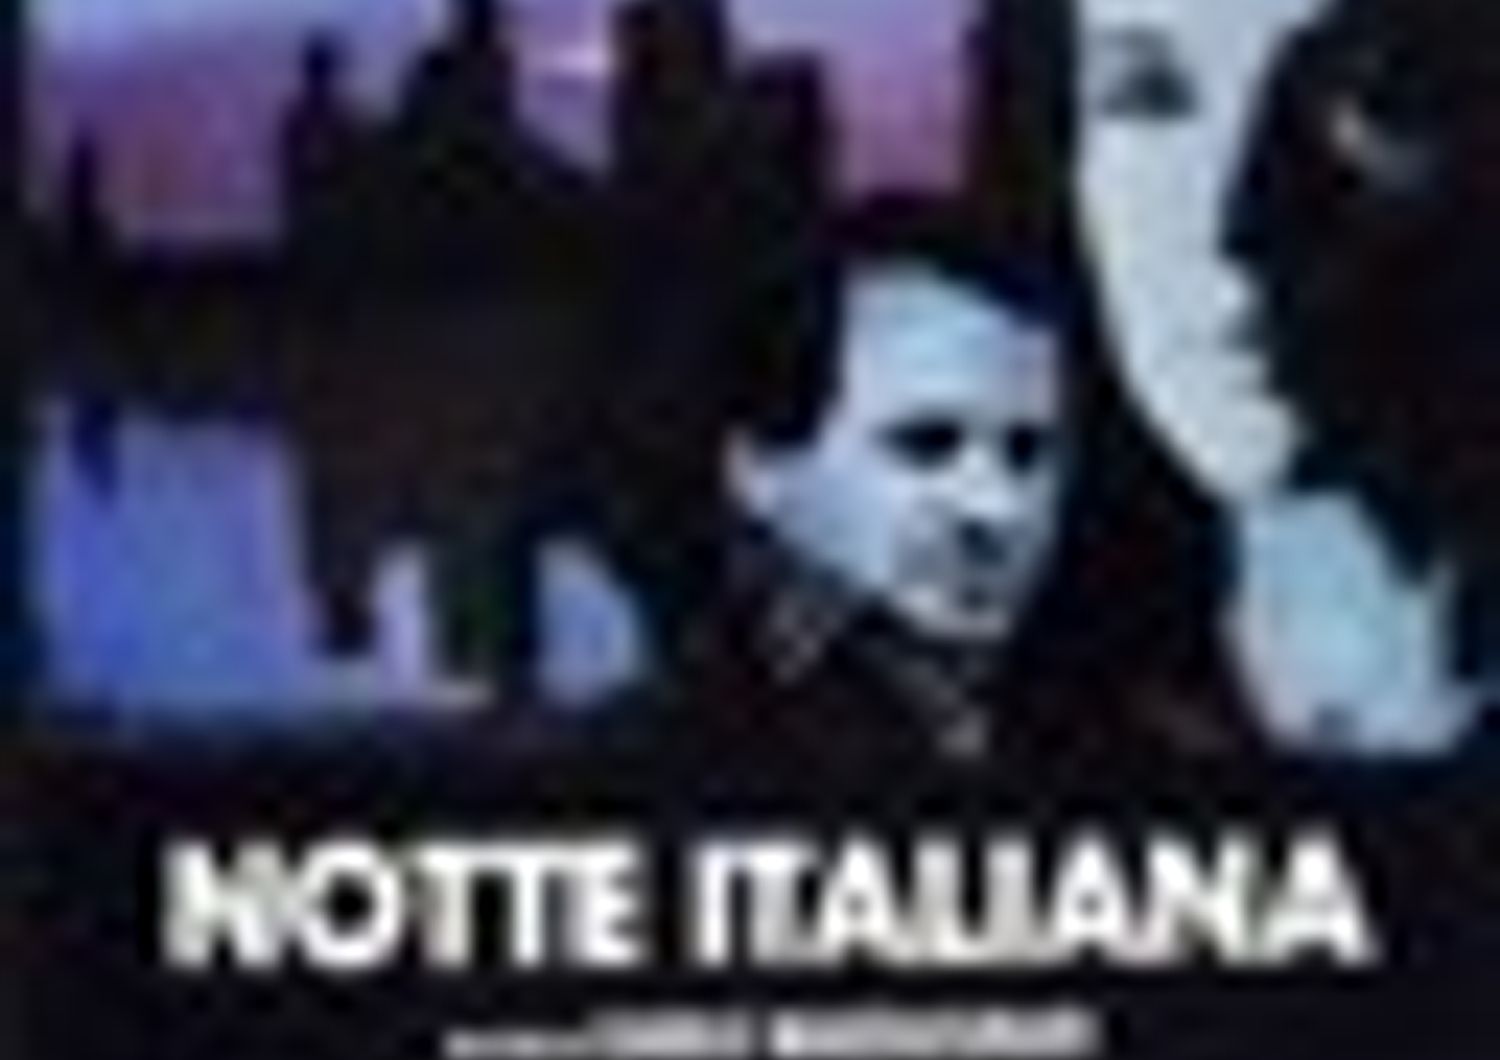 CARLO MAZZACURATI - NOTTE ITALIANA (1987) (Settimana della critica)